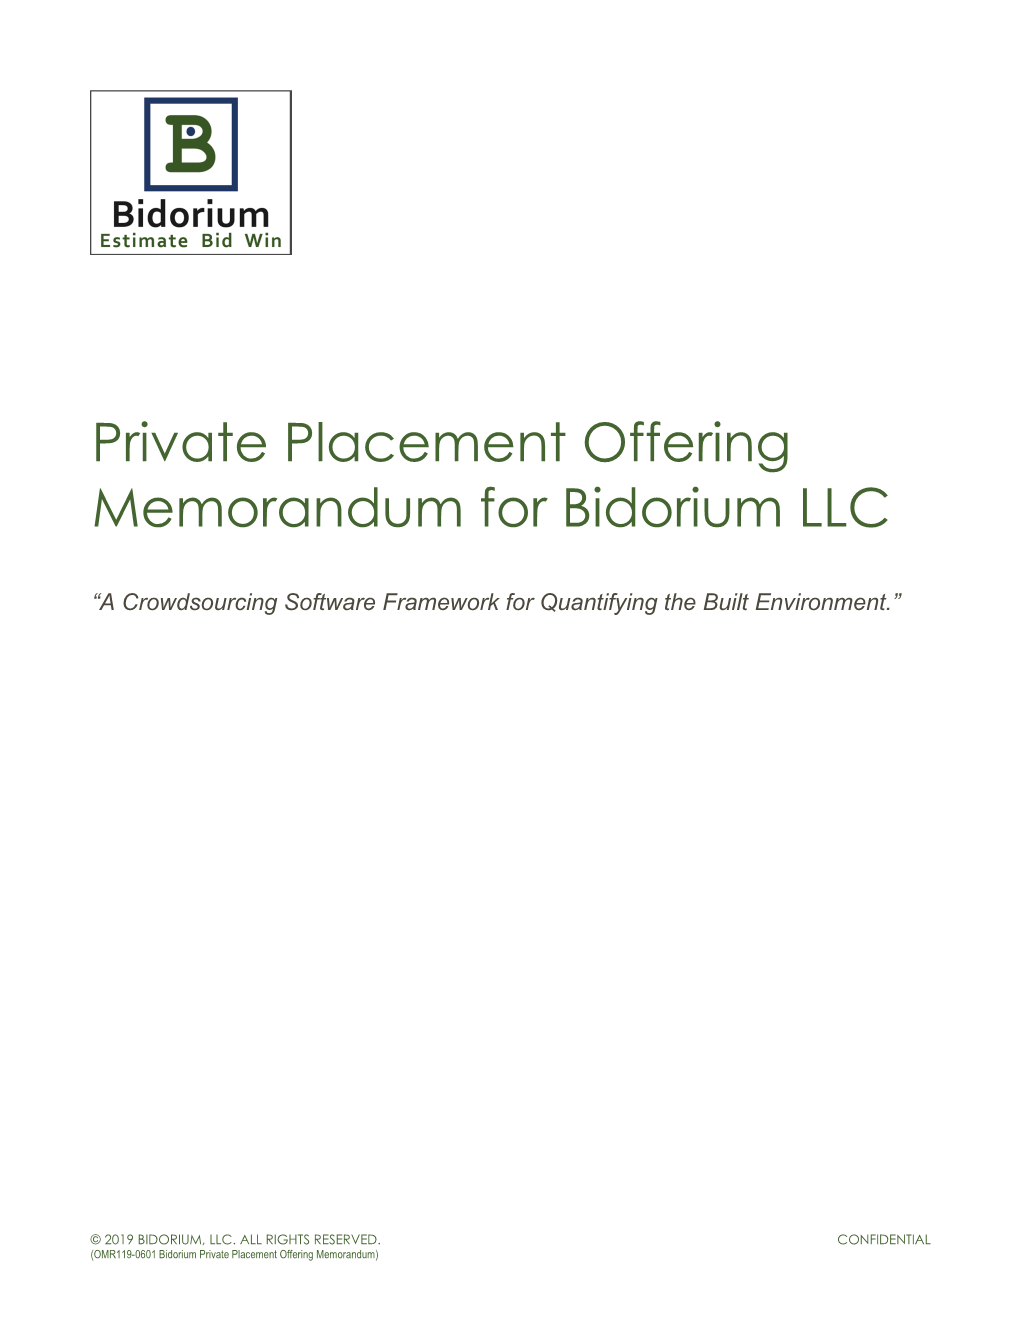 Private Placement Offering Memorandum for Bidorium LLC